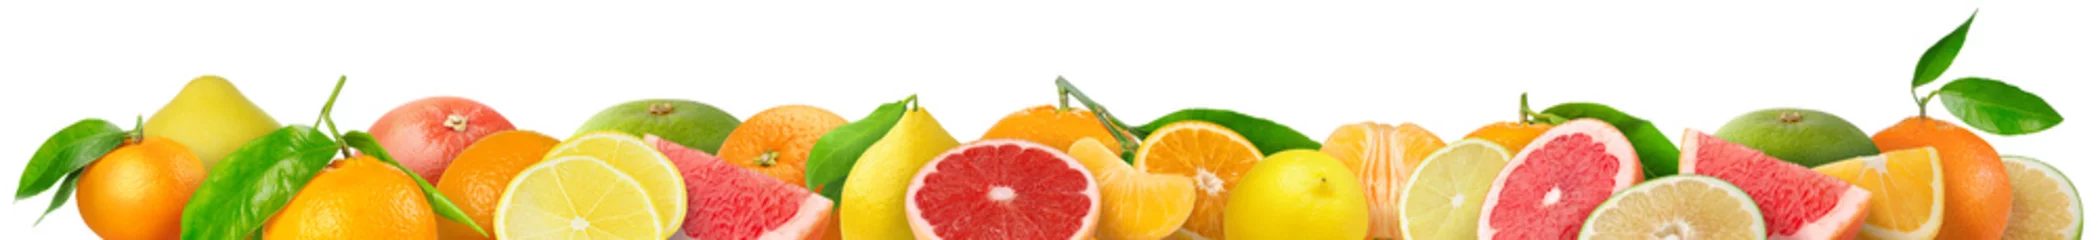 Foto op Plexiglas Gemengde citrusvruchten grens. Stapel sinaasappel, citroen, mandarijn, grapefruit en andere citrusvruchten in horizontale samenstelling geïsoleerd op witte achtergrond © ChaoticDesignStudio